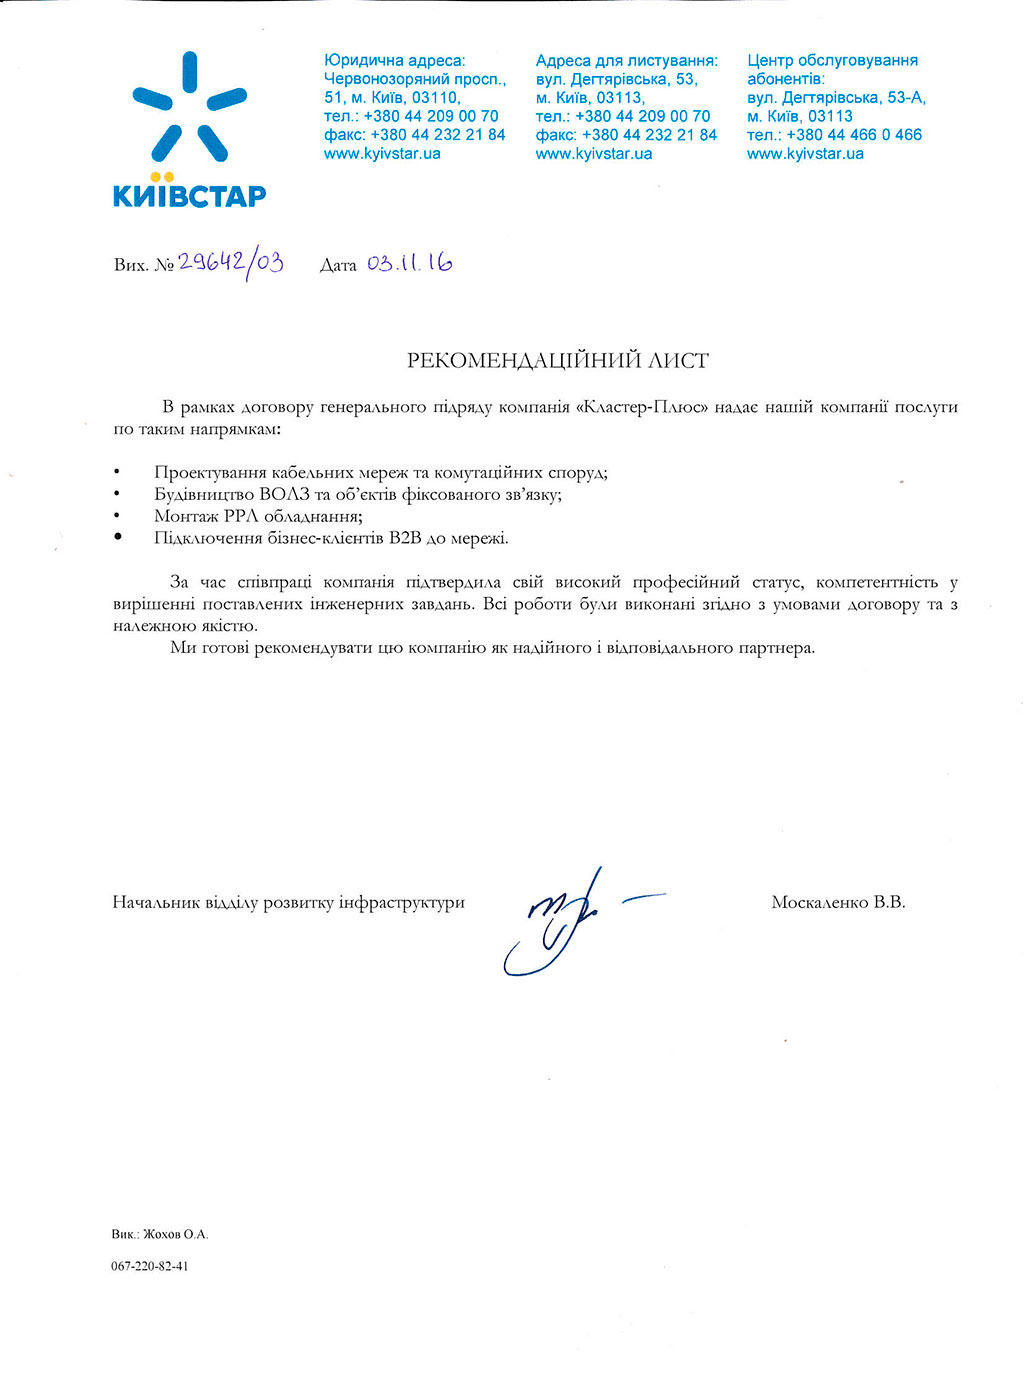 Рекомендаційний лист від АТ «Київстар»